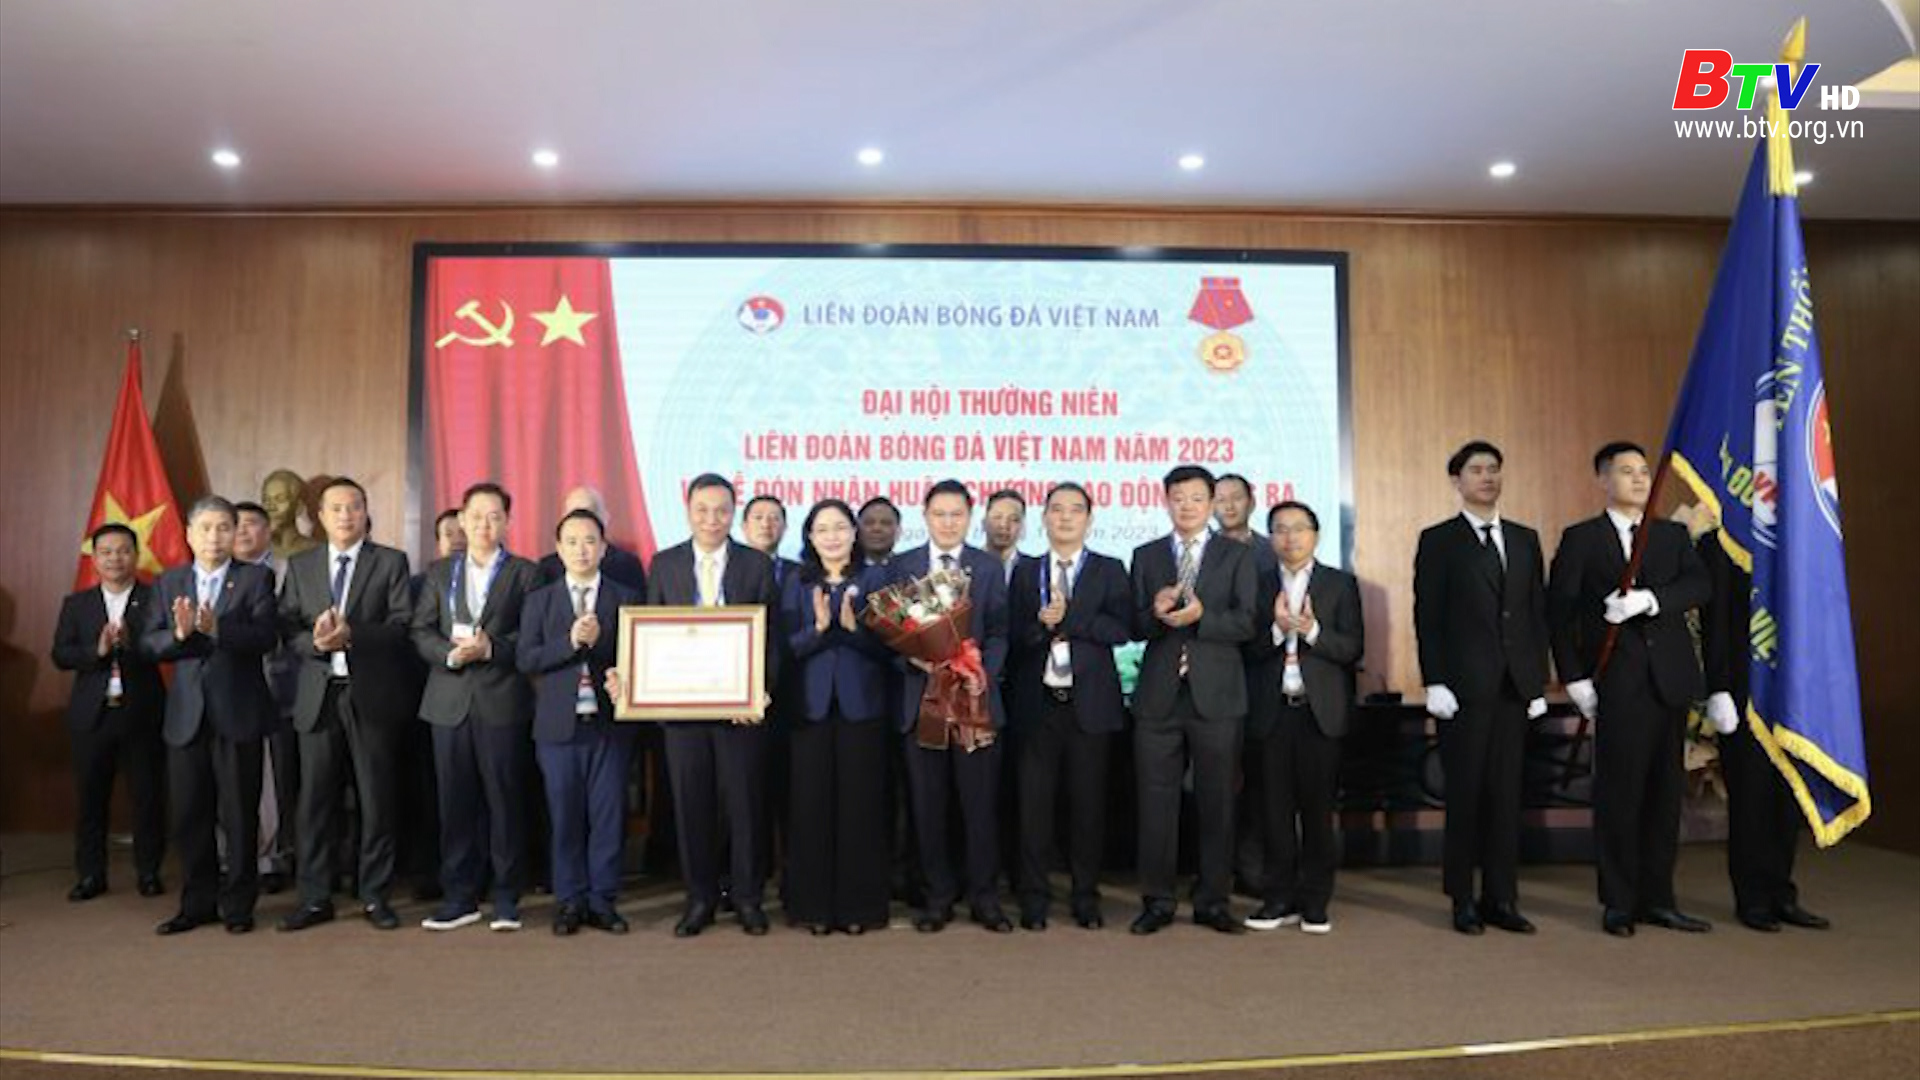 Liên đoàn bóng đá Việt Nam được tặng thưởng Huân chương Lao động hạng Ba